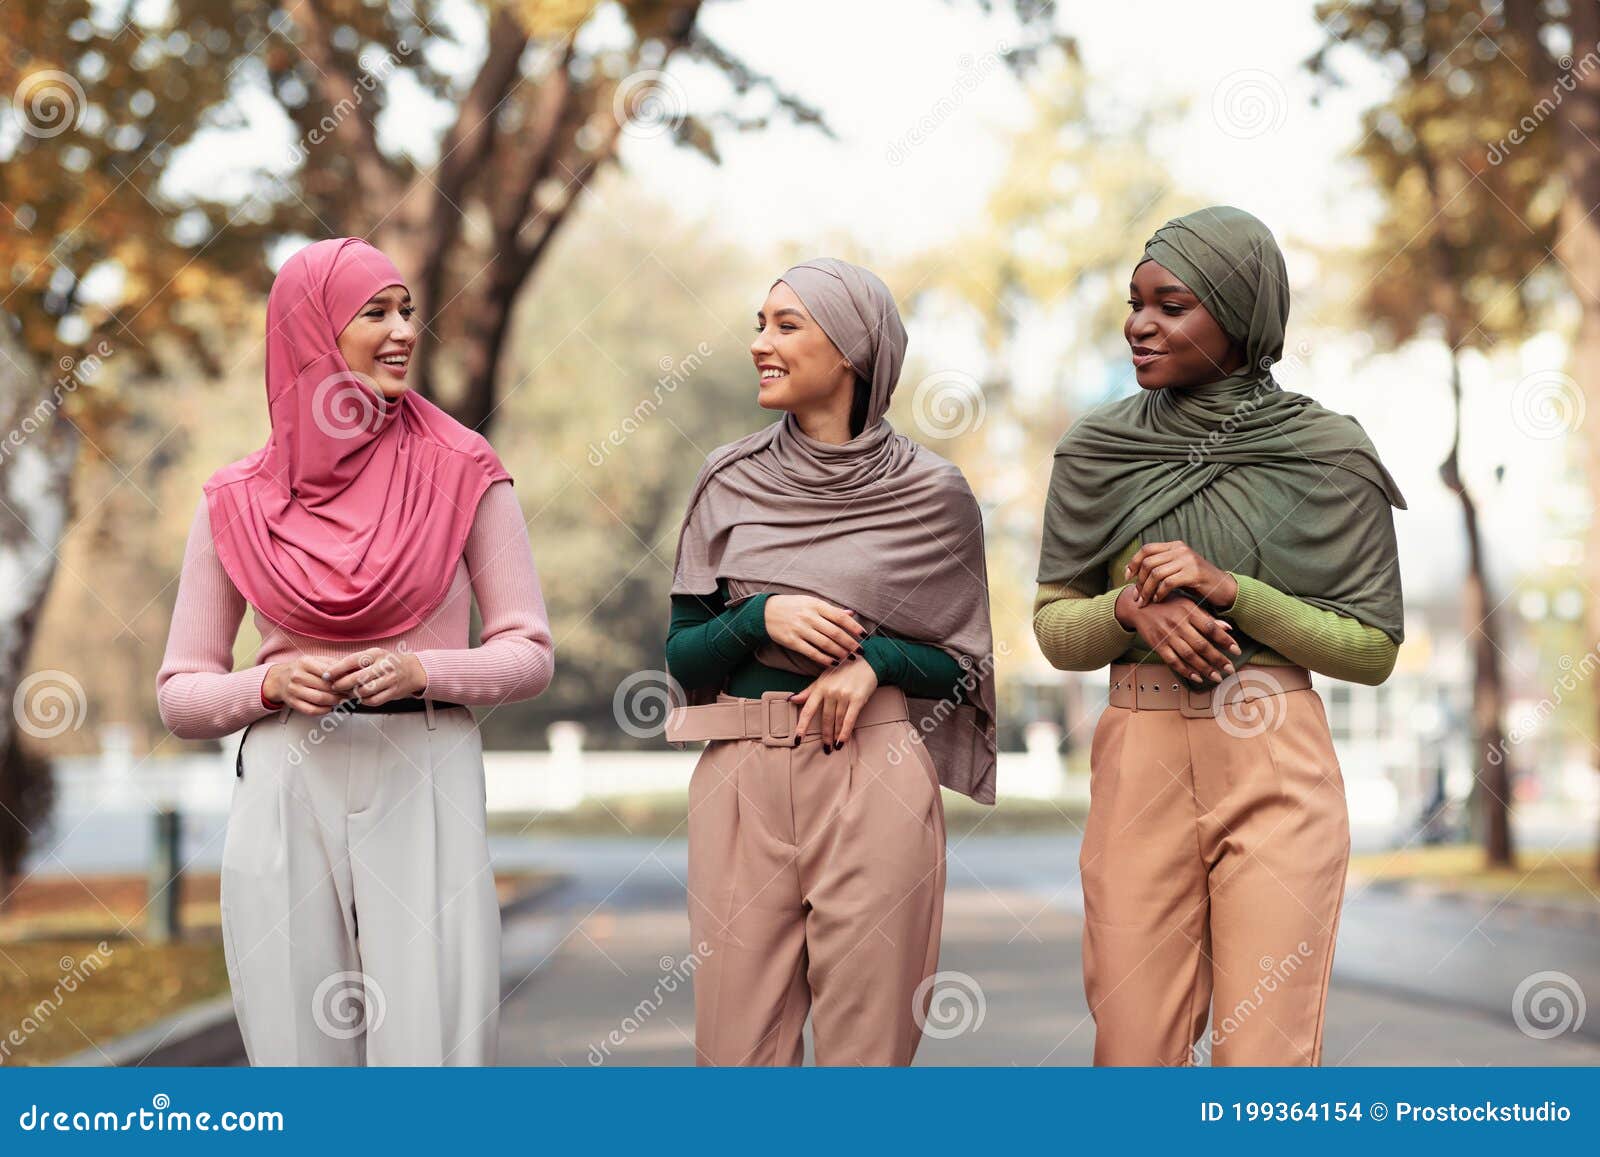 Aktentas uitzondering magie Drie Moderne Moslimjonge Vrouwen in Hijab Hoofddoek Die Buiten Lopen Stock  Foto - Image of vrouwelijk, toevallig: 199364154